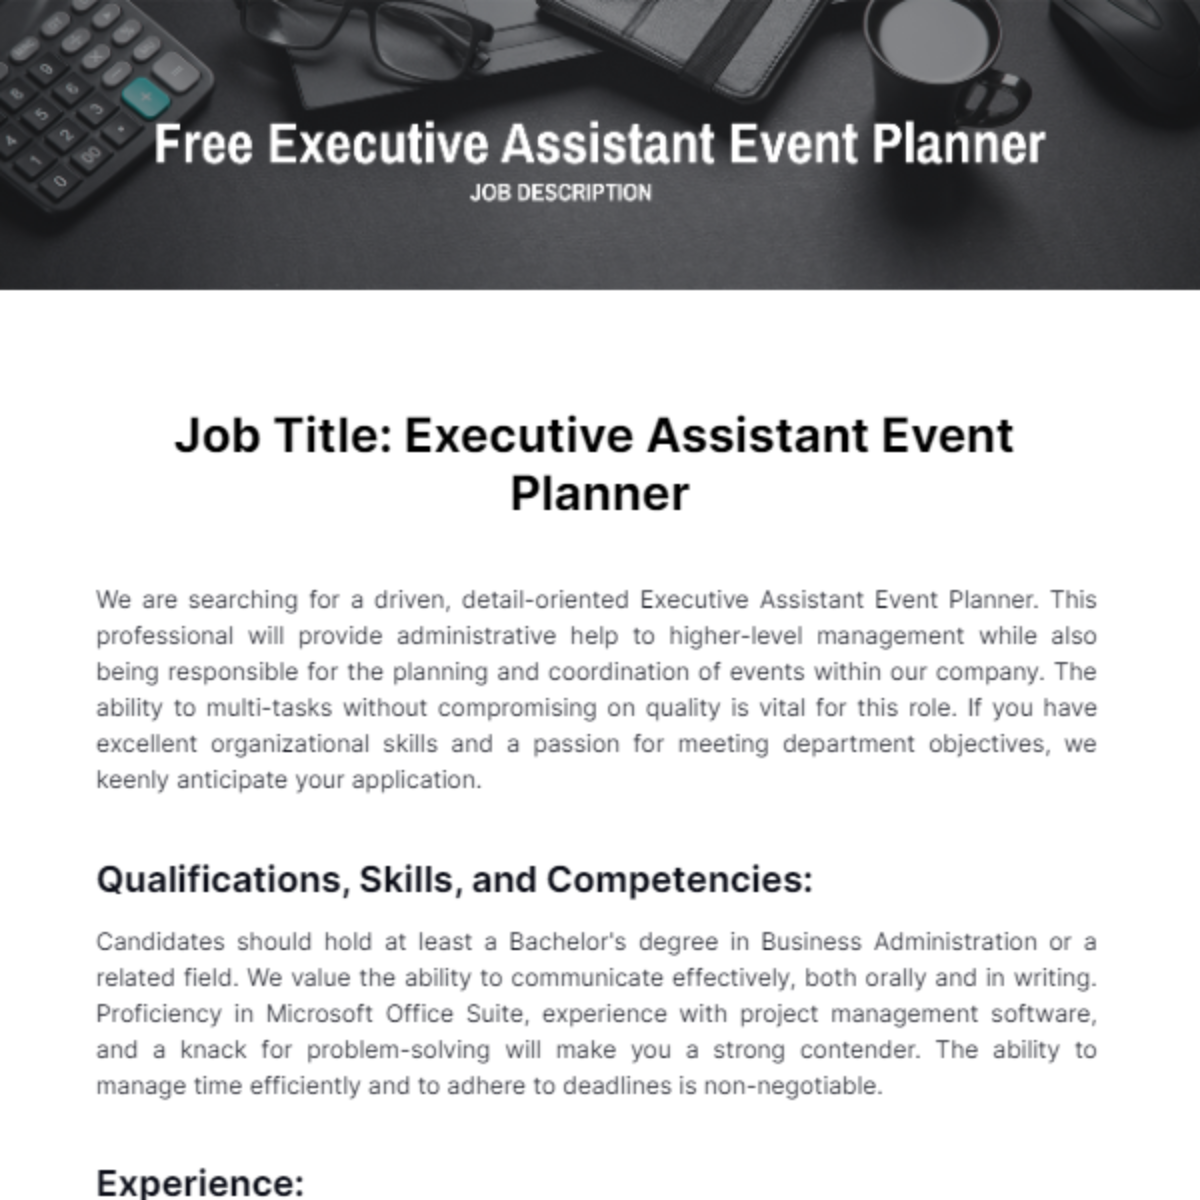 Executive Assistant Event Planner Job Description Template